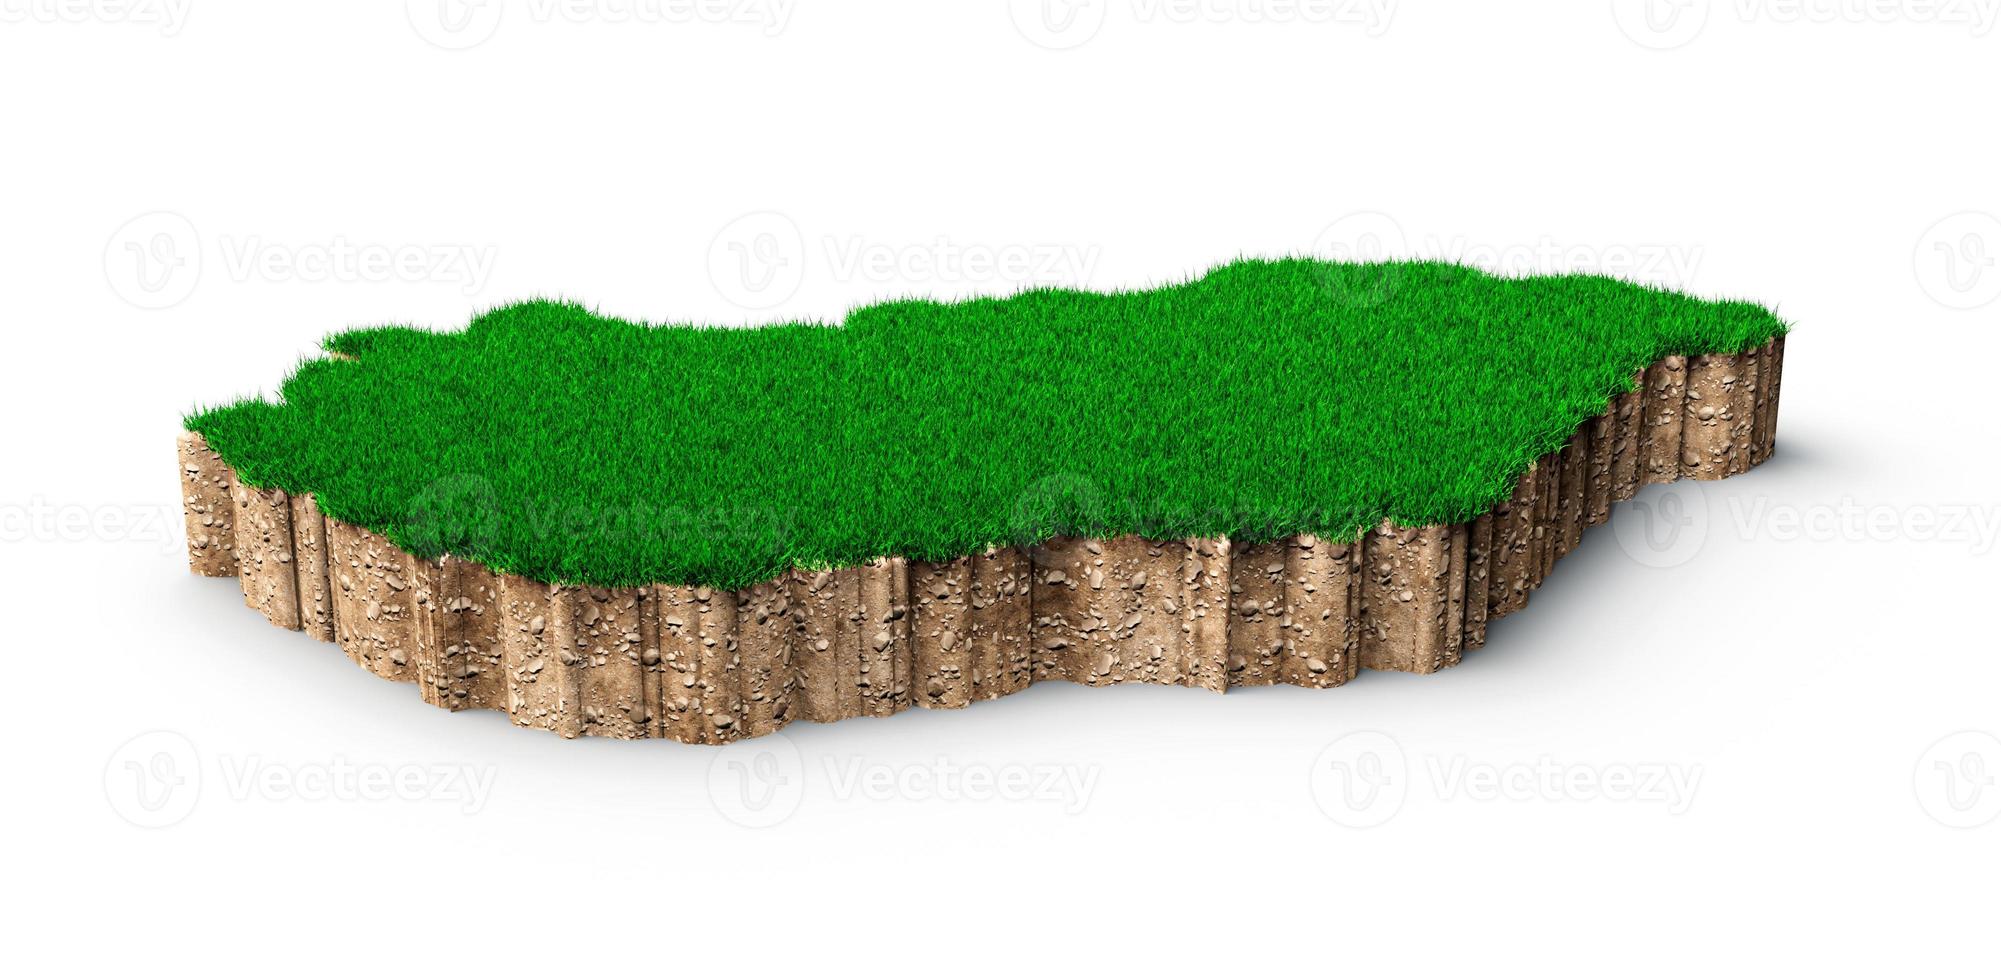 ungarn karte boden land geologie querschnitt mit grünem gras und felsen bodentextur 3d illustration foto